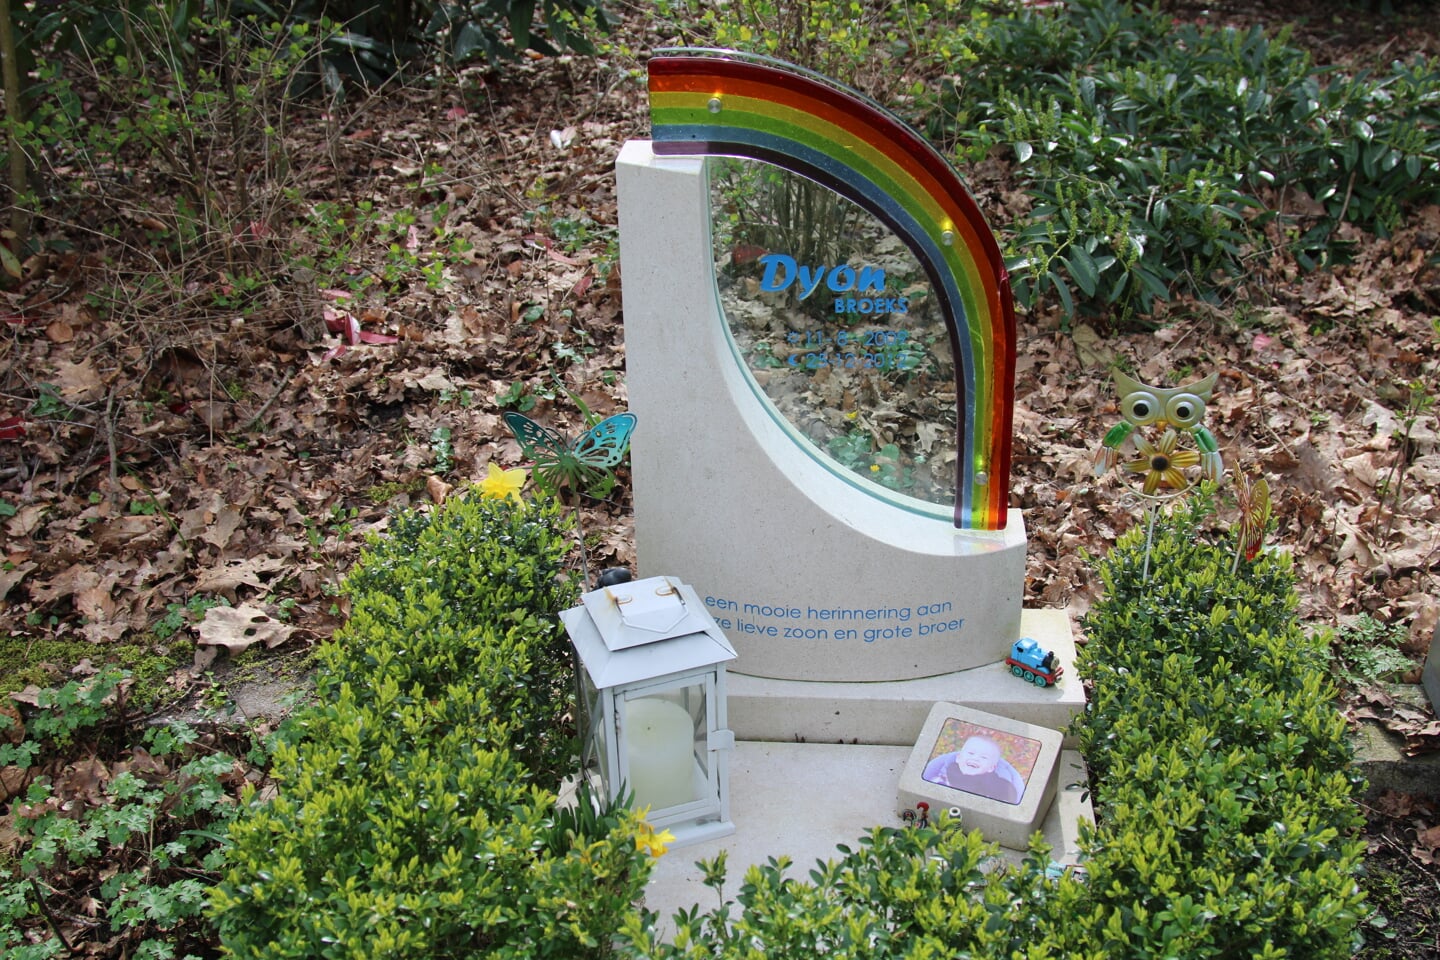  De grafsteen heeft bewust de afbeelding van een regenboog. 